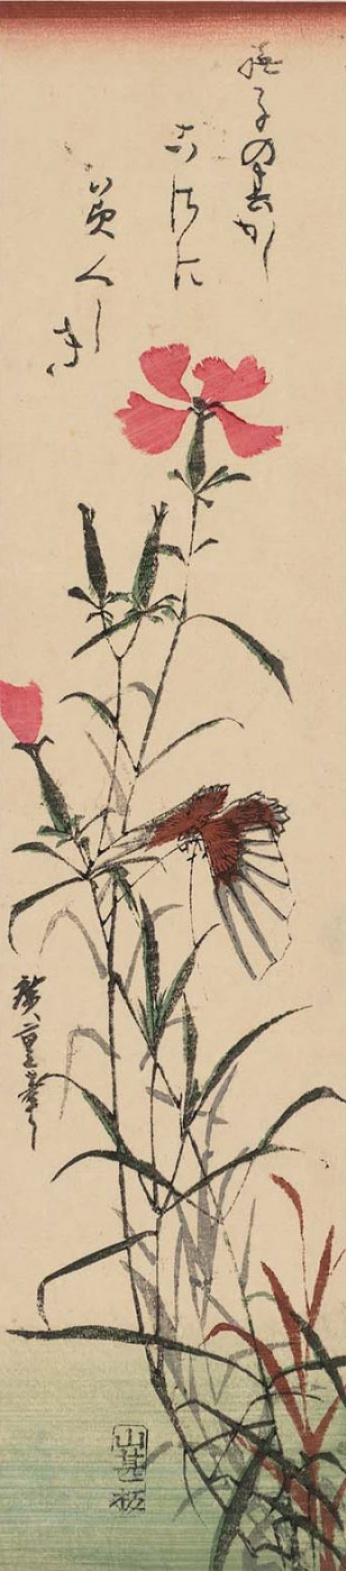 Utagawa Hiroshige. Butterfly and pink carnation